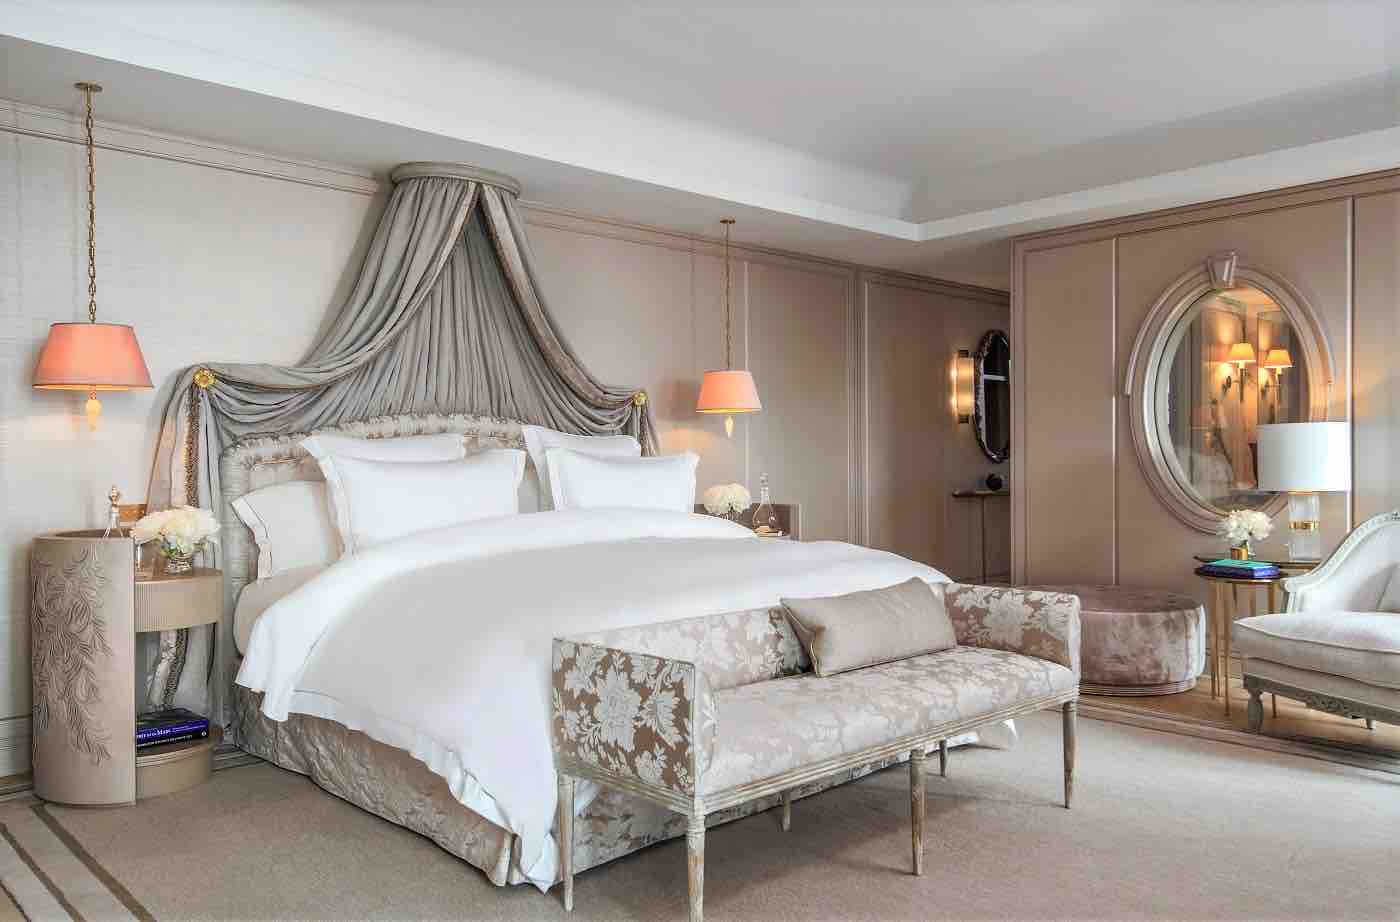 4. Suite Marie-Antoinette - Bed room